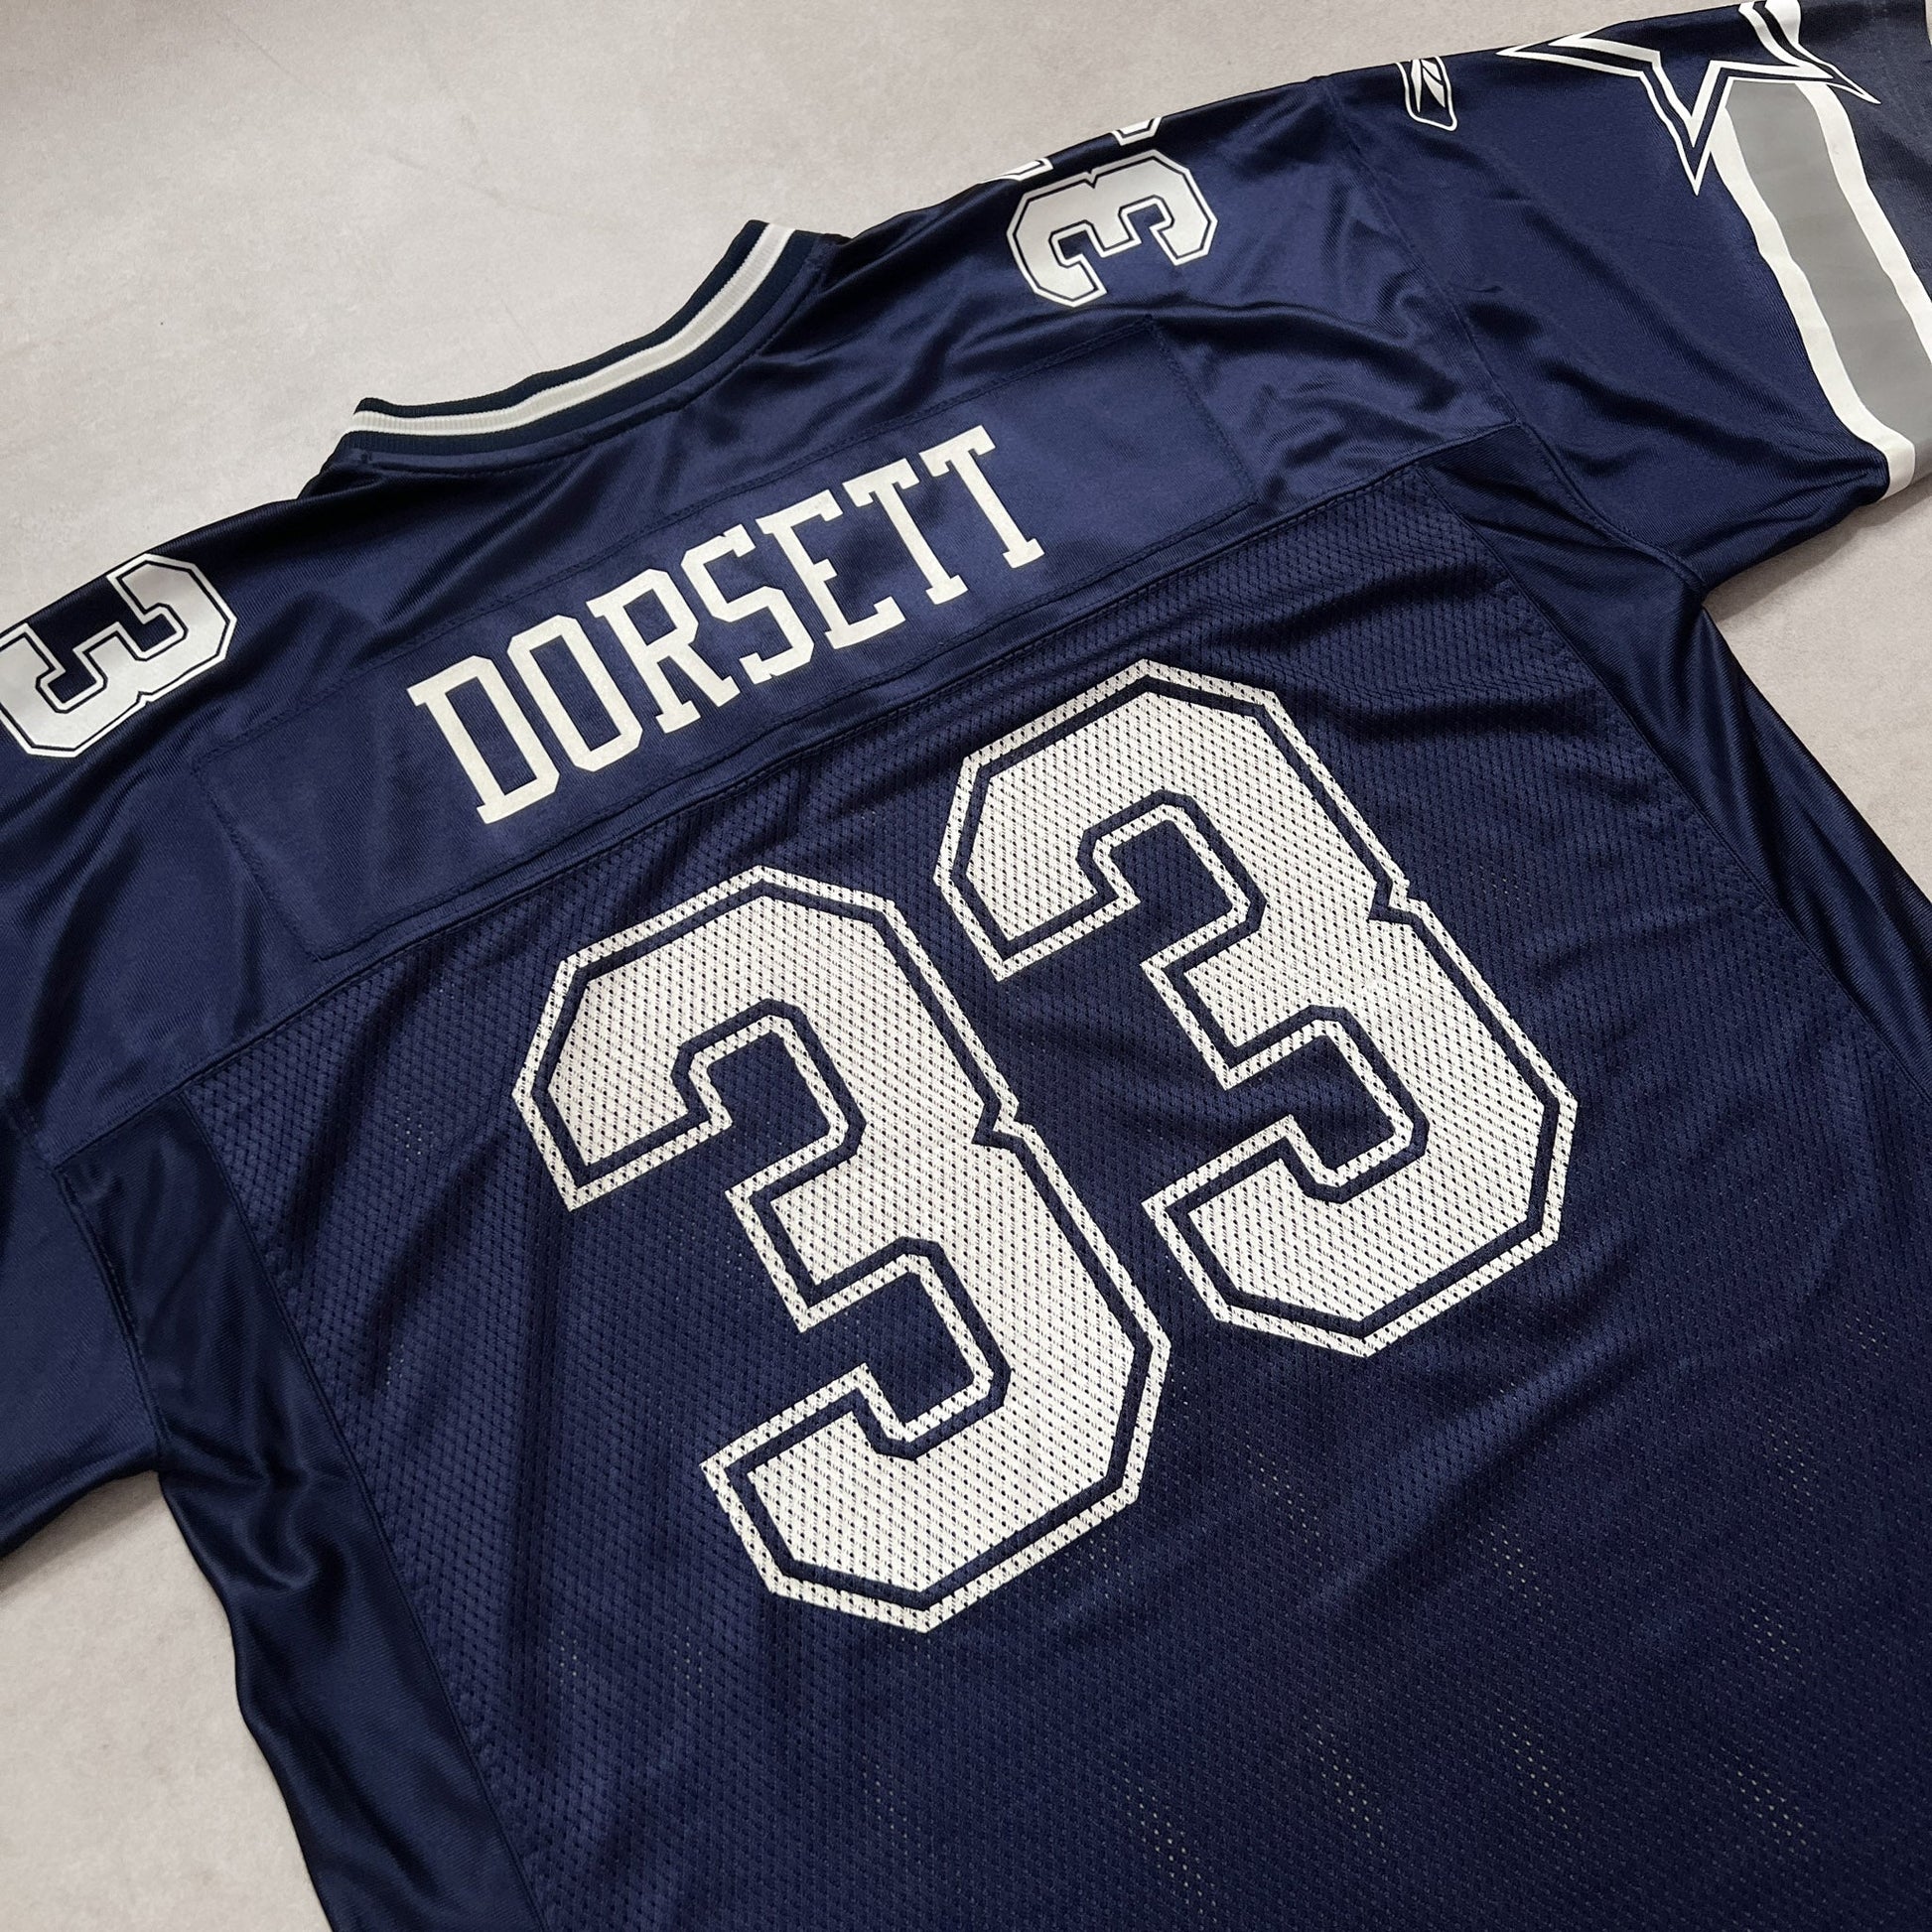 Vintage Reebok NFL "Tony Dorsett" Dallas Cowboys Jersey - XL sullivansvintage